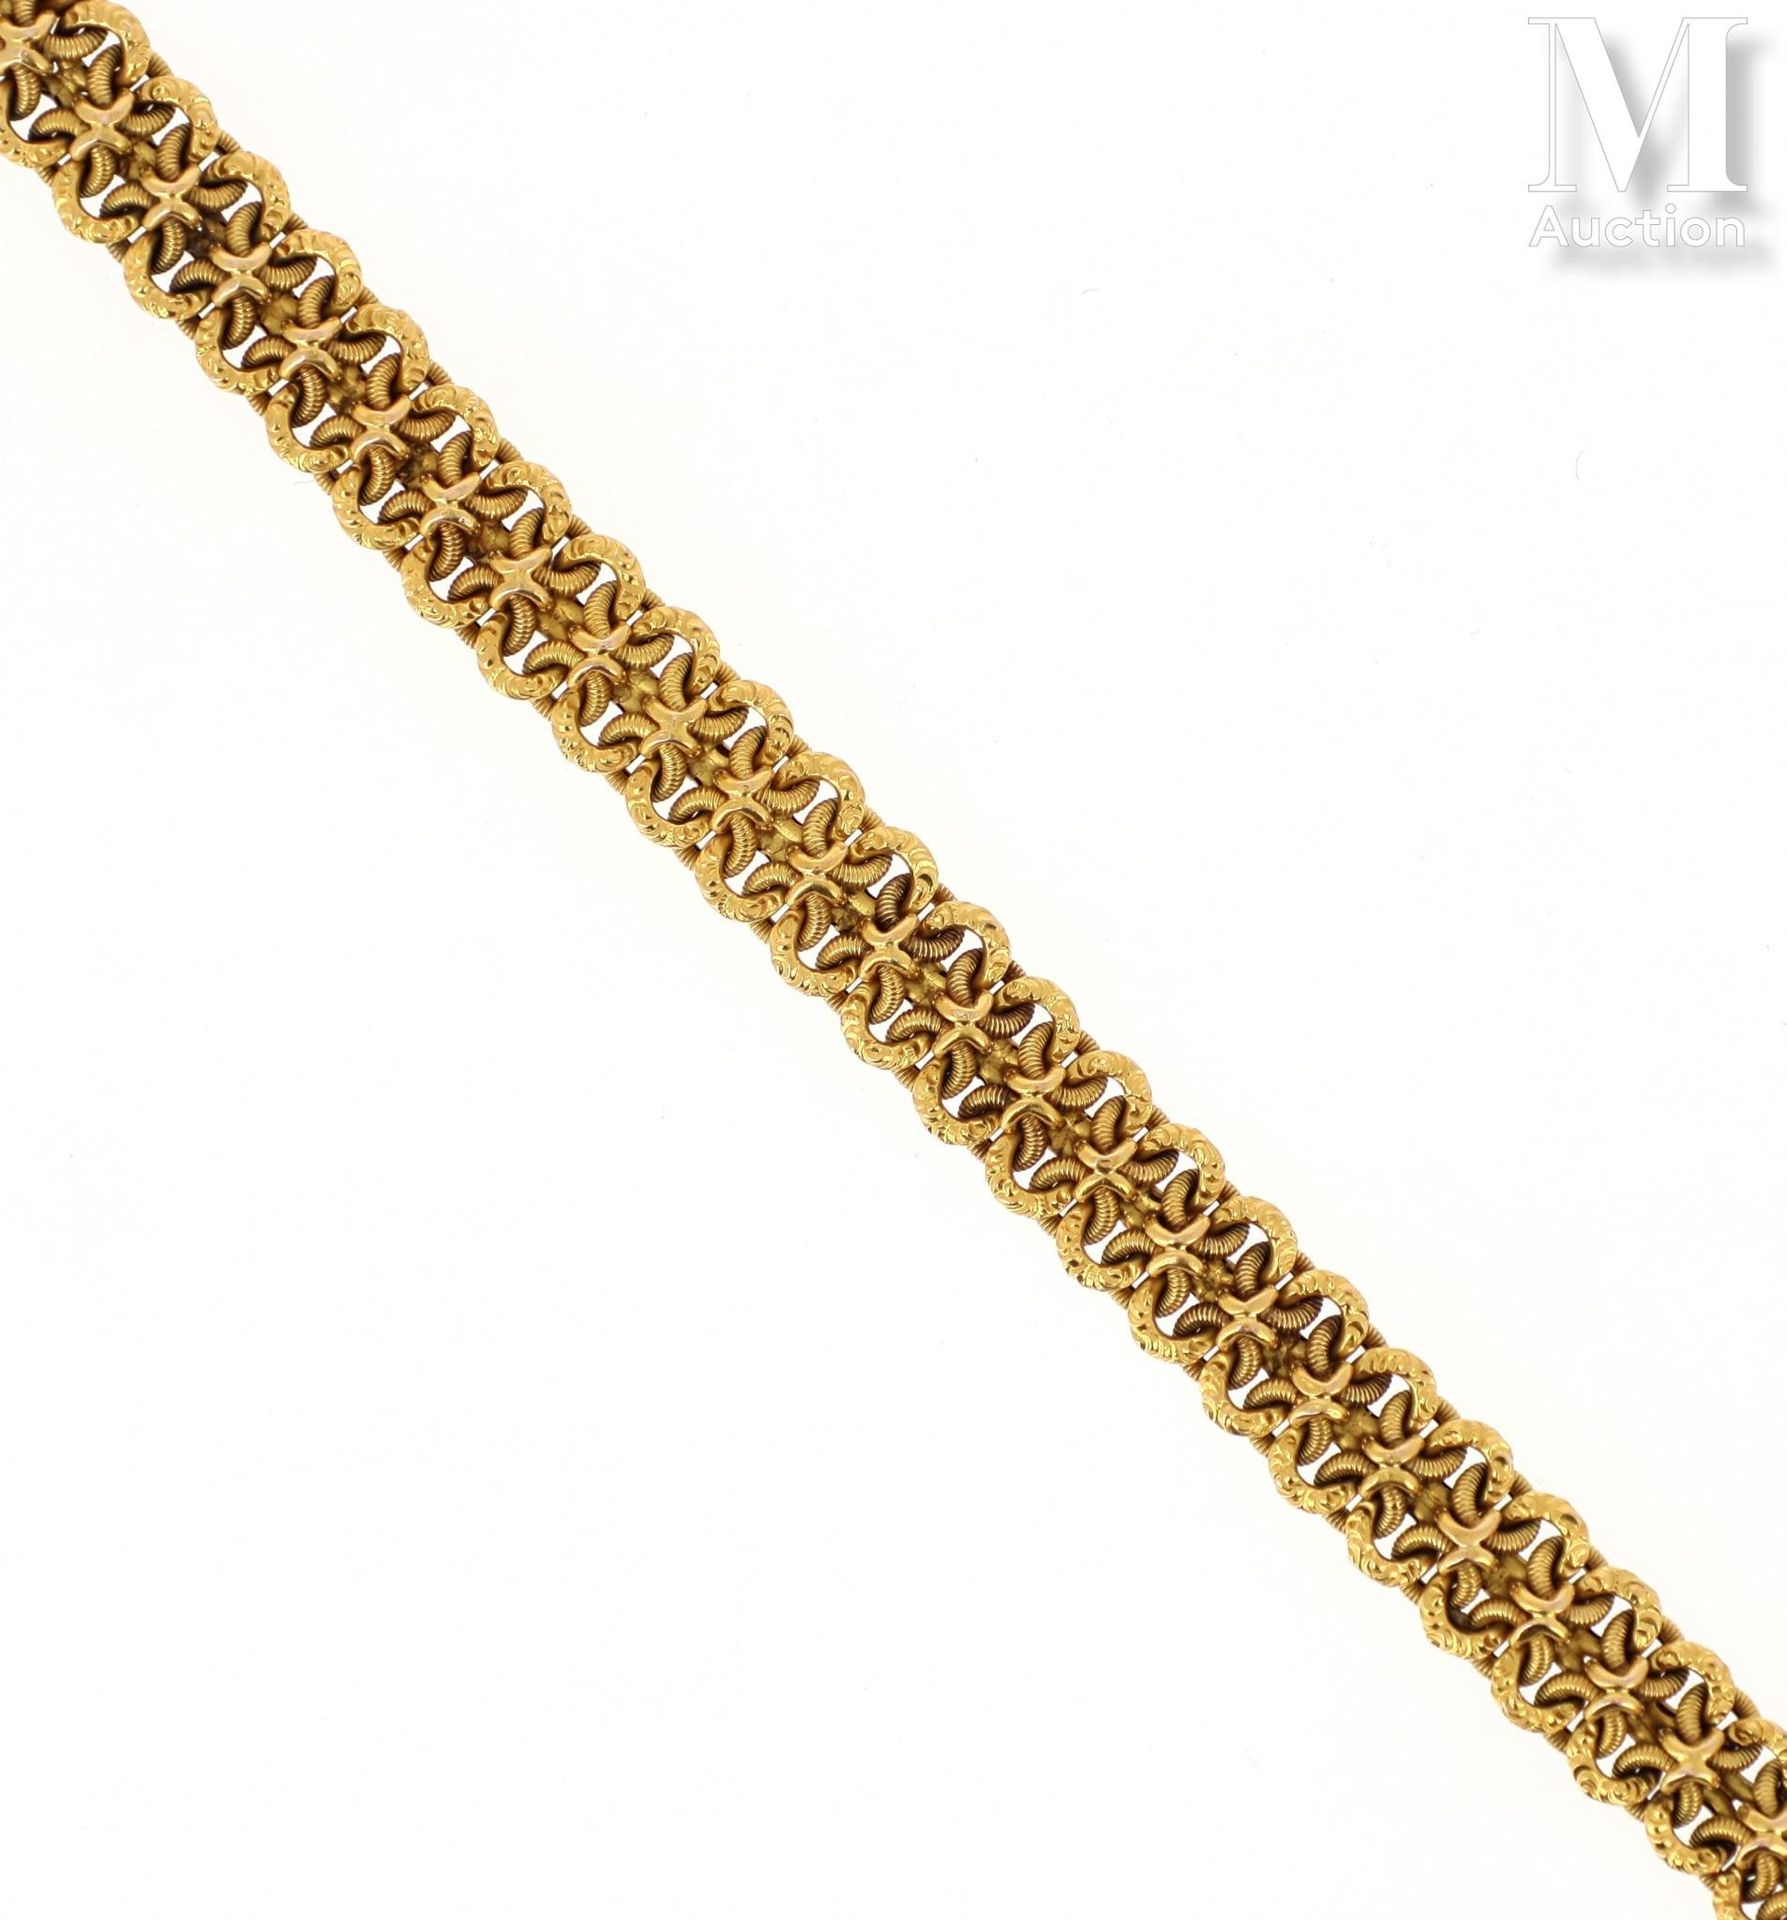 Bracelet or Pulsera de oro amarillo de 18 quilates (750 milésimas) formada por u&hellip;